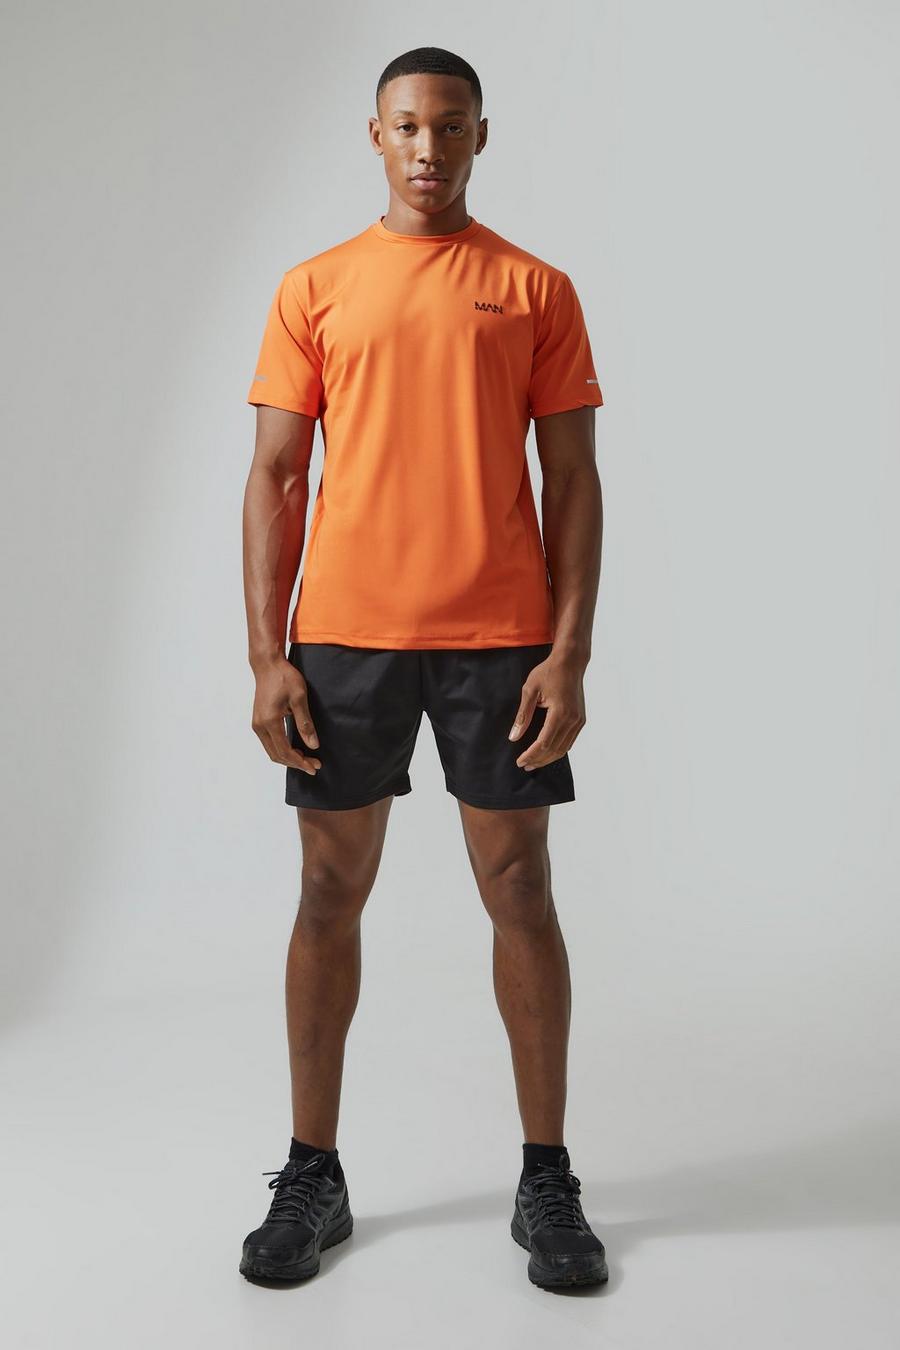 Ensemble de sport avec t-shirt et short - MAN Active, Orange